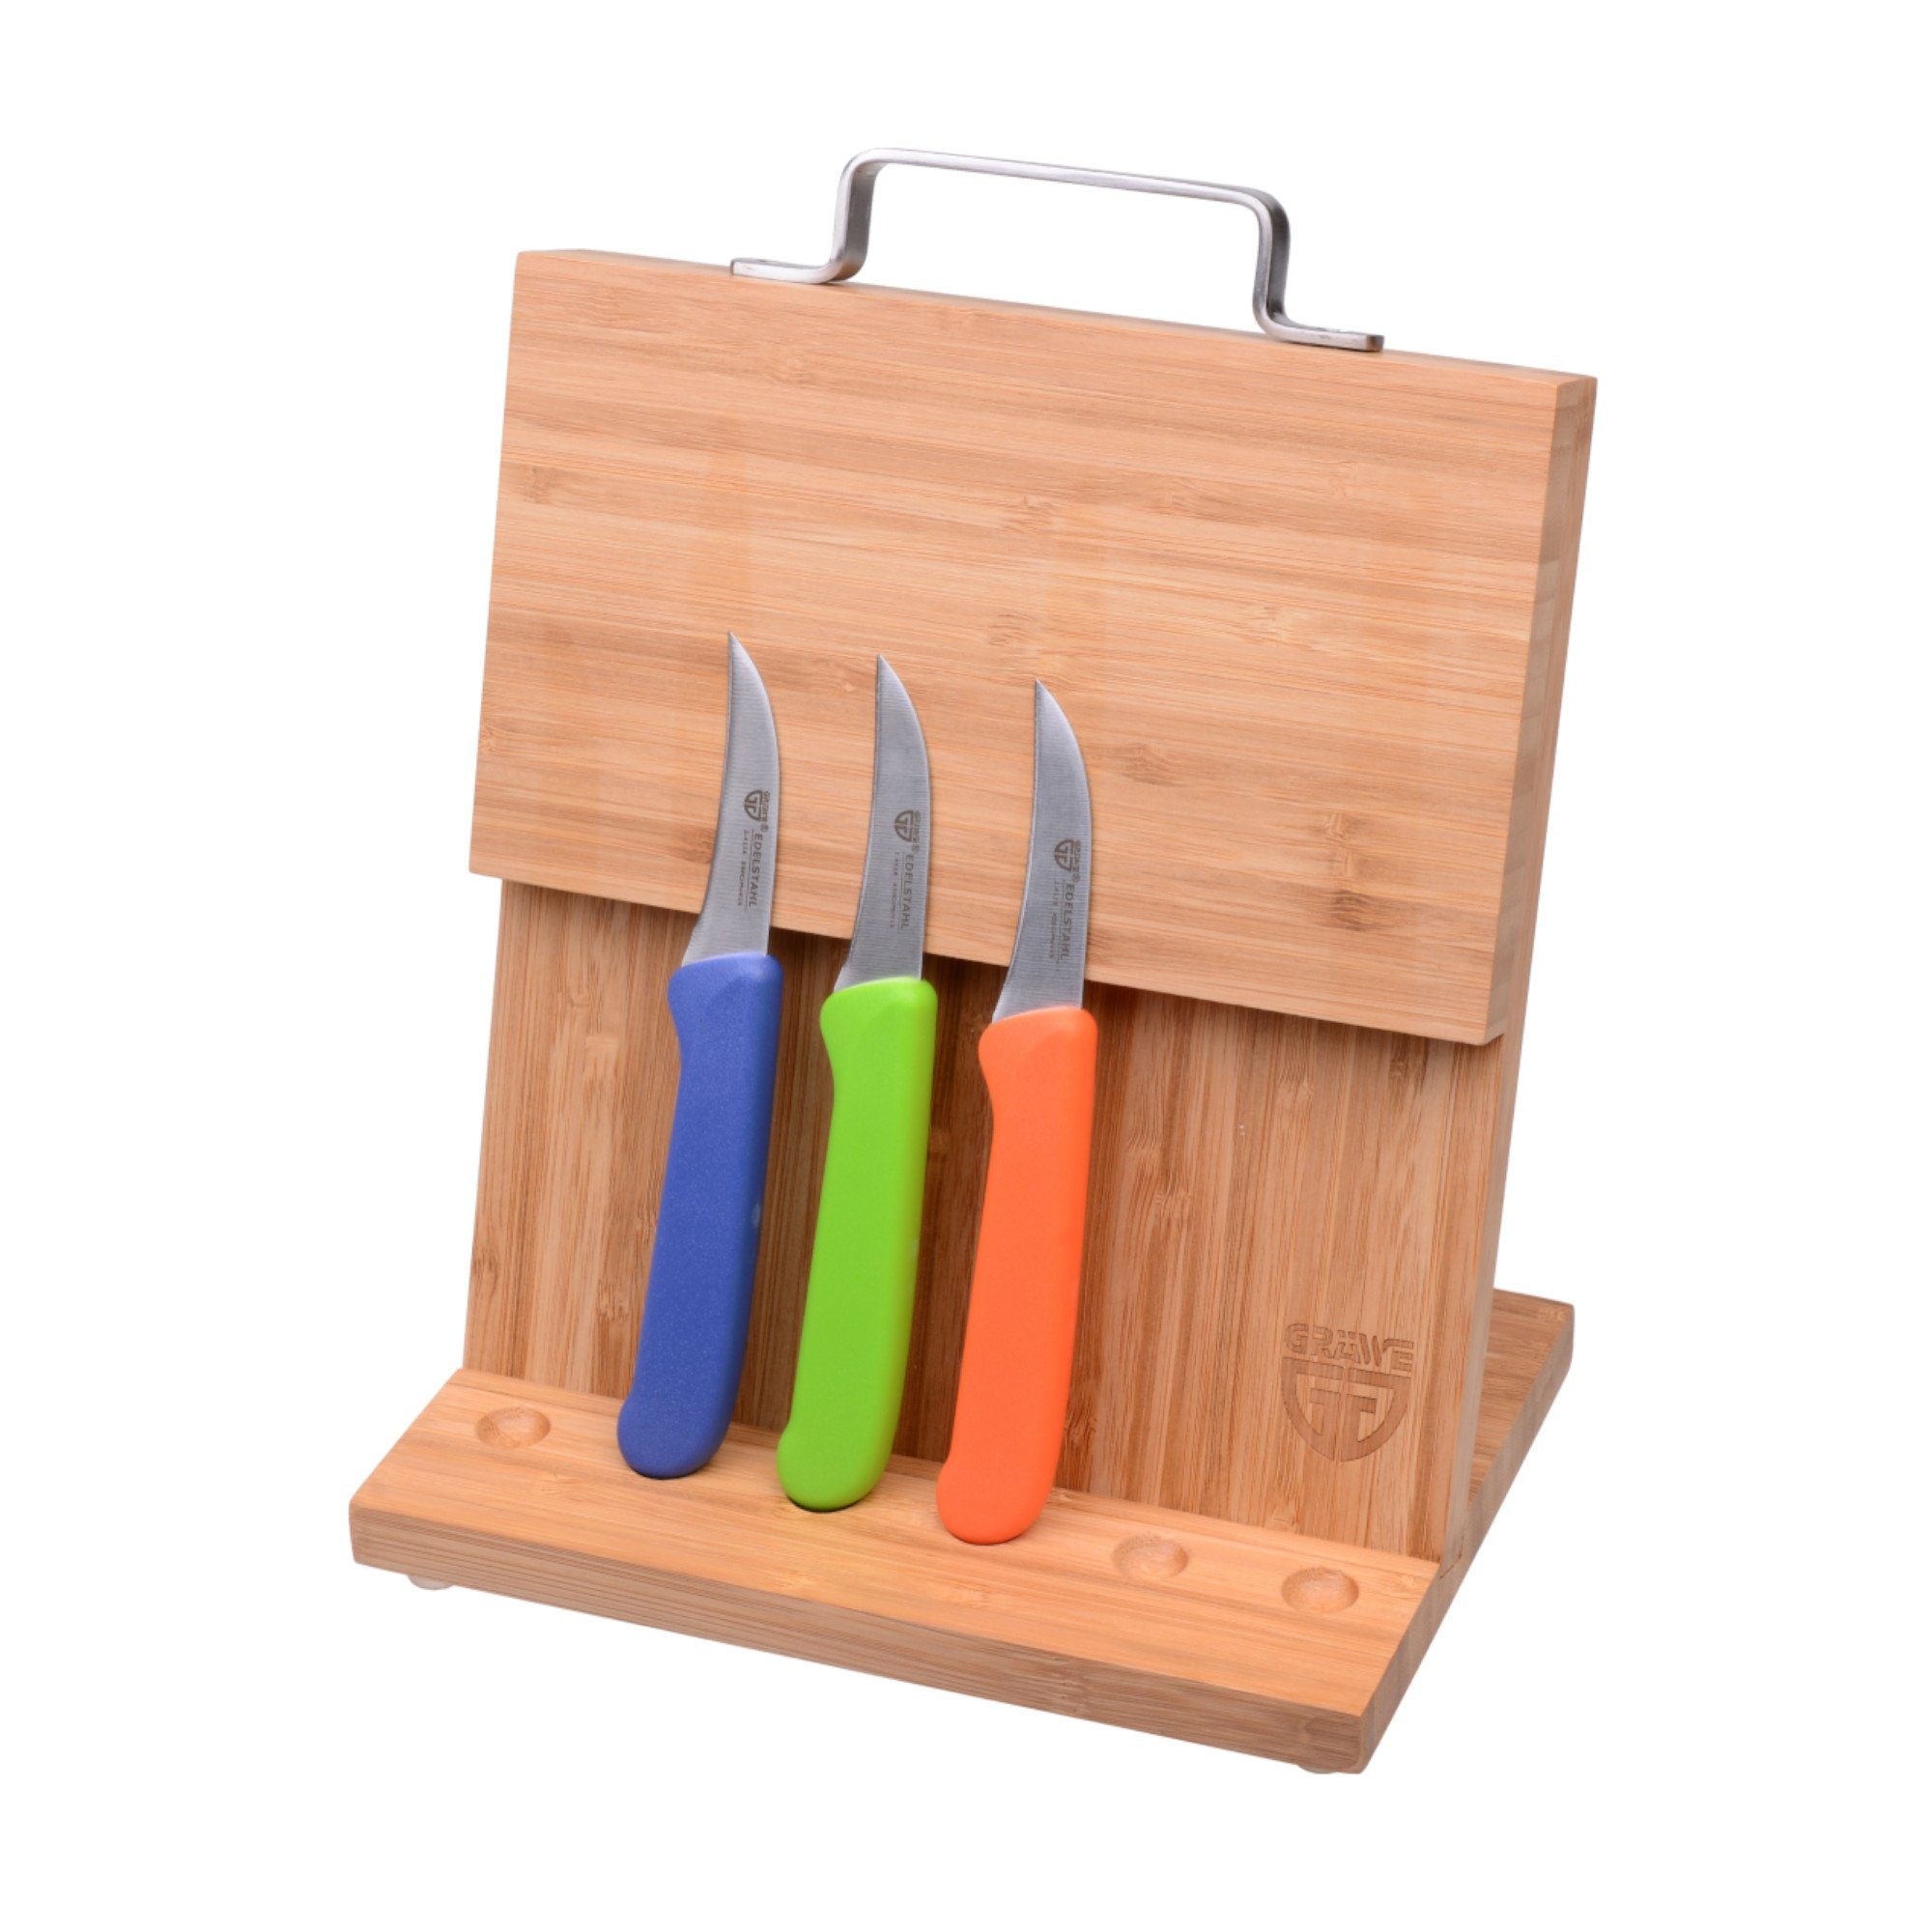 GRÄWE Messerblock GRÄWE Magnet-Messerhalter Bambus Natur Küchenmessern mit Bunt, klein